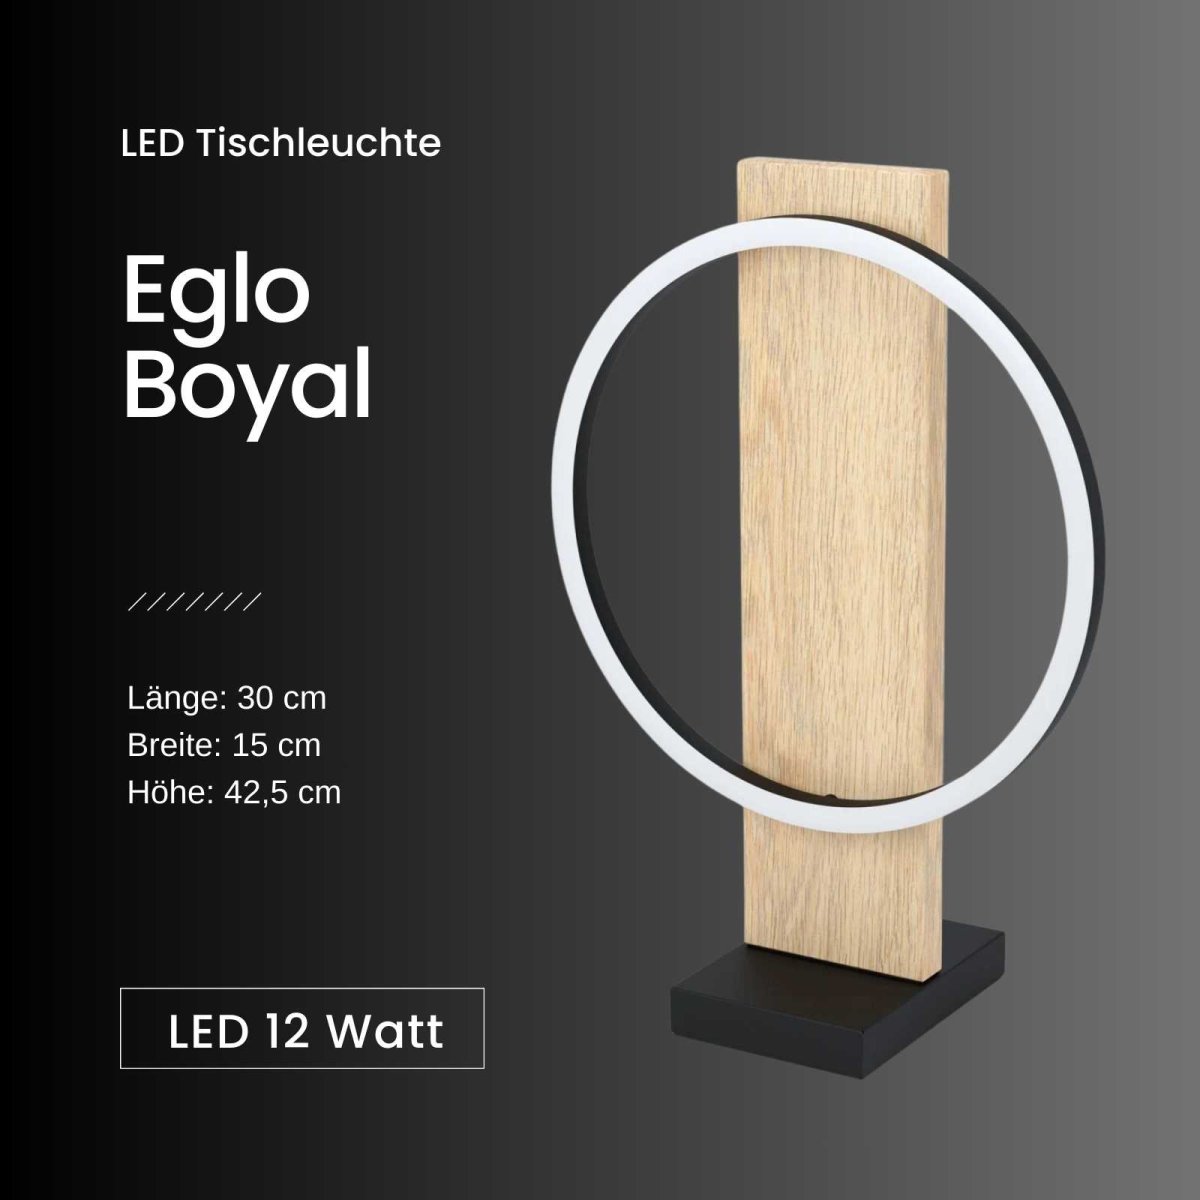 Tischlampe Holz Schwarz 49,00 Tischleuchte natur Boyal LED Eglo Weiß, €